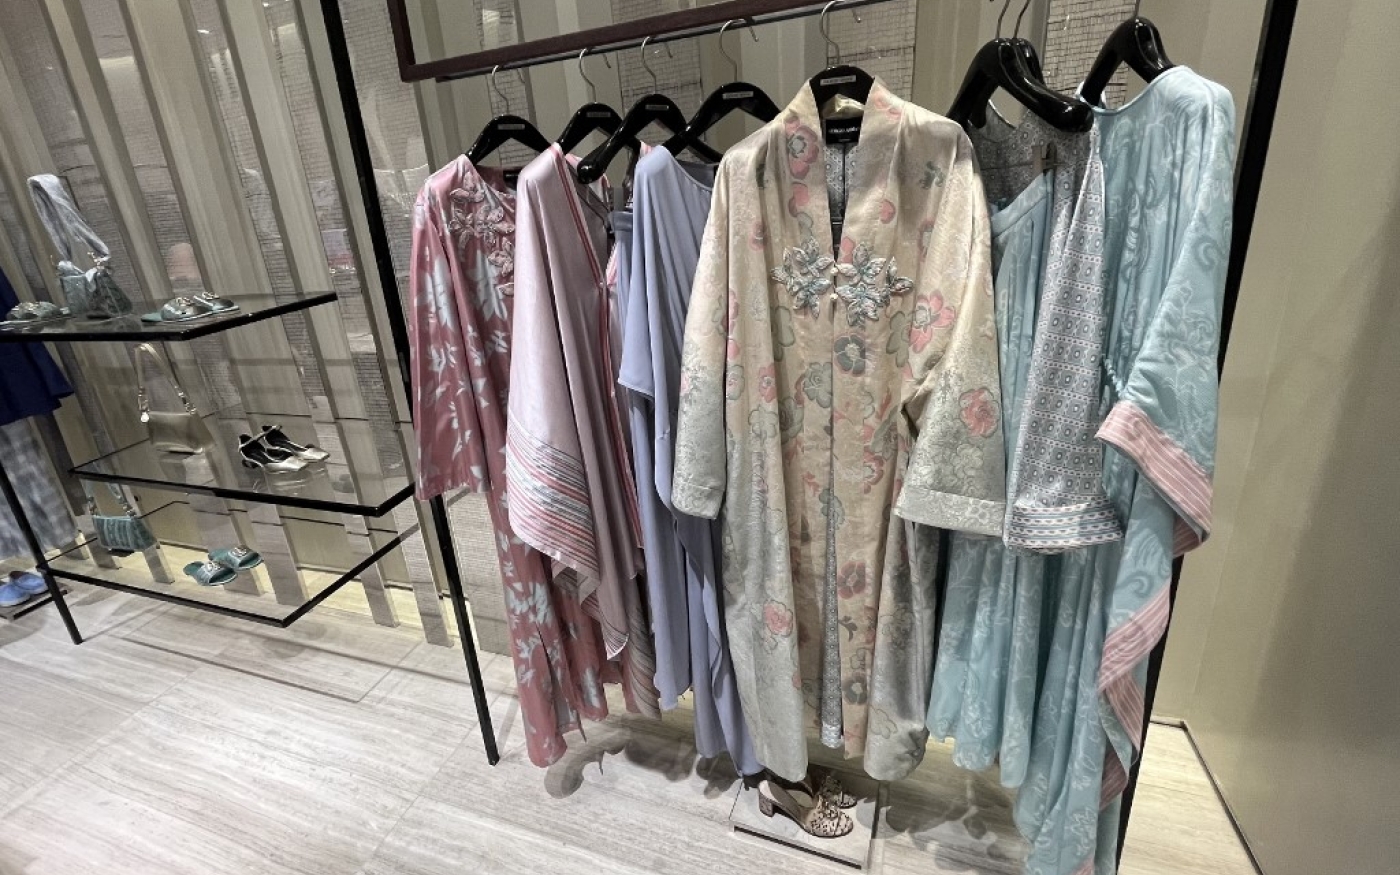 Des robes aux couleurs douces, faisant partie de la collection Ramadan, à l’intérieur de la boutique Giorgio Armani du Mall of the Emirates à Dubaï, pendant le mois sacré musulman du Ramadan (AFP/Giuseppe Cacace)